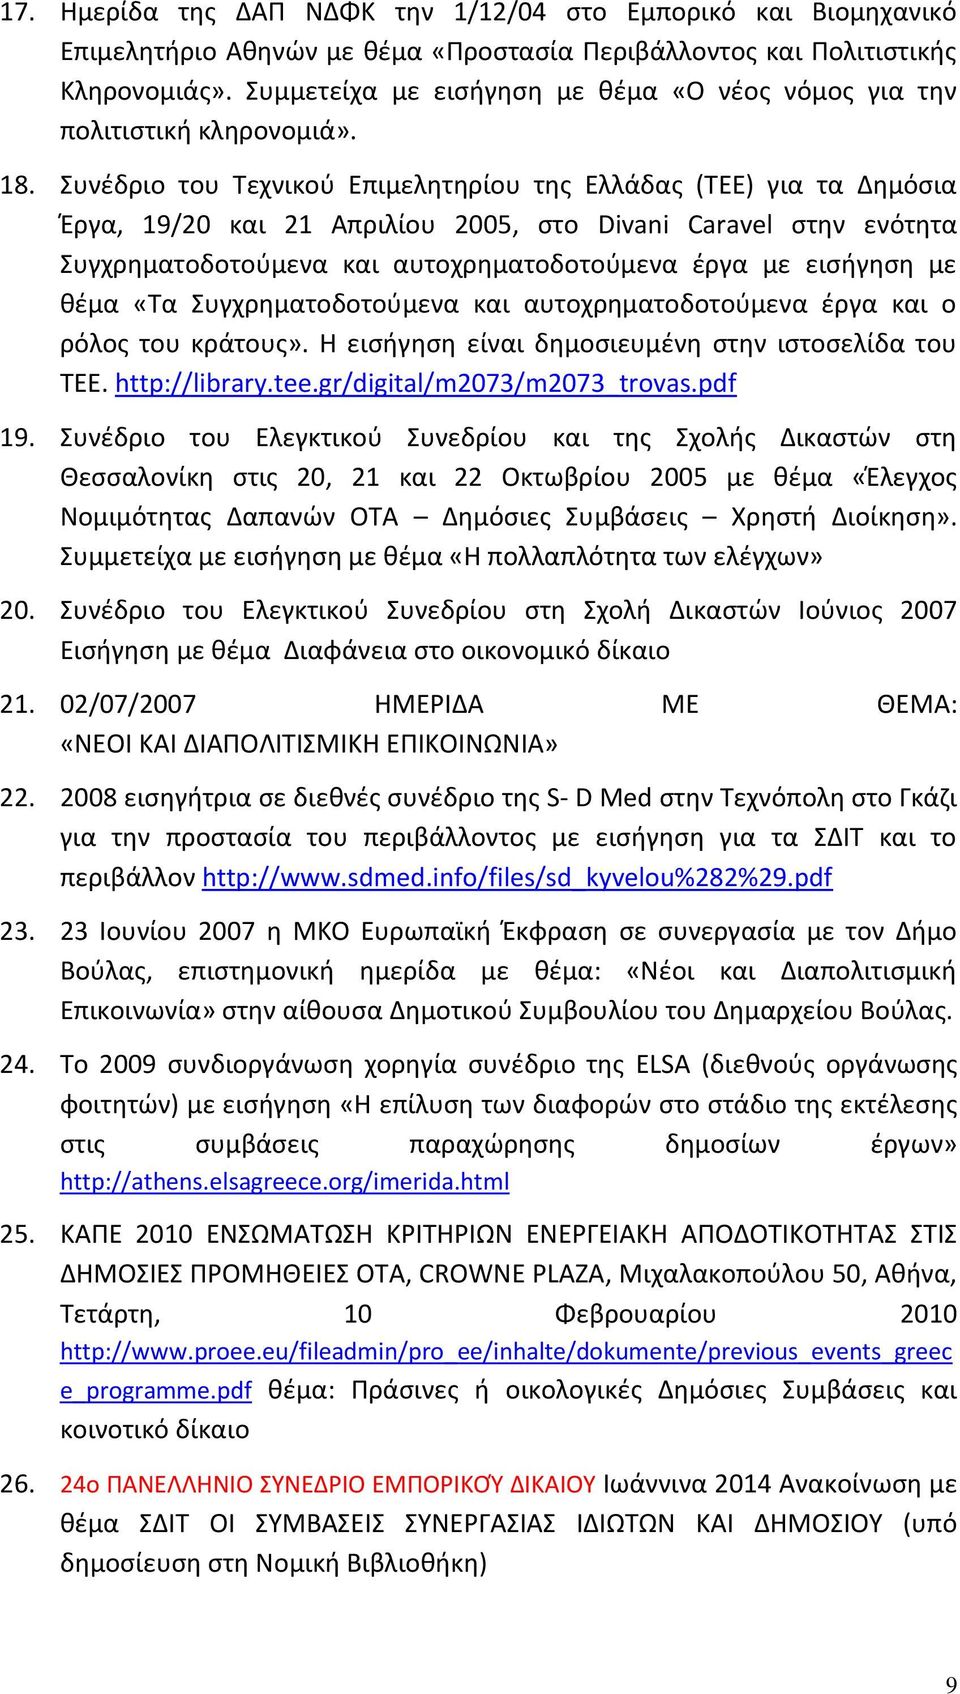 Συνέδριο του Τεχνικού Επιμελητηρίου της Ελλάδας (ΤΕΕ) για τα Δημόσια Έργα, 19/20 και 21 Απριλίου 2005, στο Divani Caravel στην ενότητα Συγχρηματοδοτούμενα και αυτοχρηματοδοτούμενα έργα με εισήγηση με